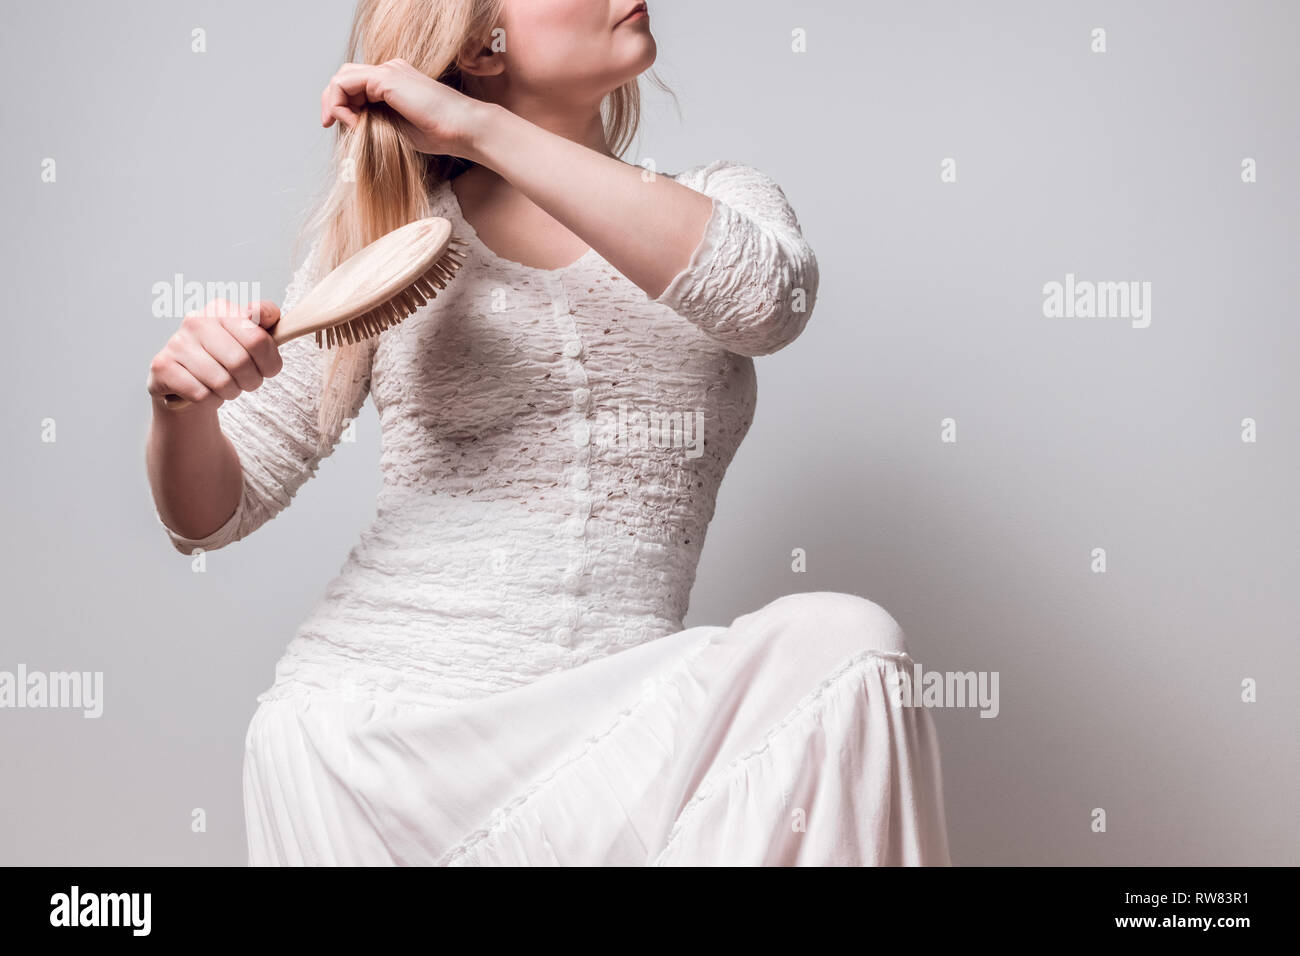 Junge Frau in weiß ihre langen blonden Haare bürsten mit einem hölzernen Haarbürste. Stockfoto